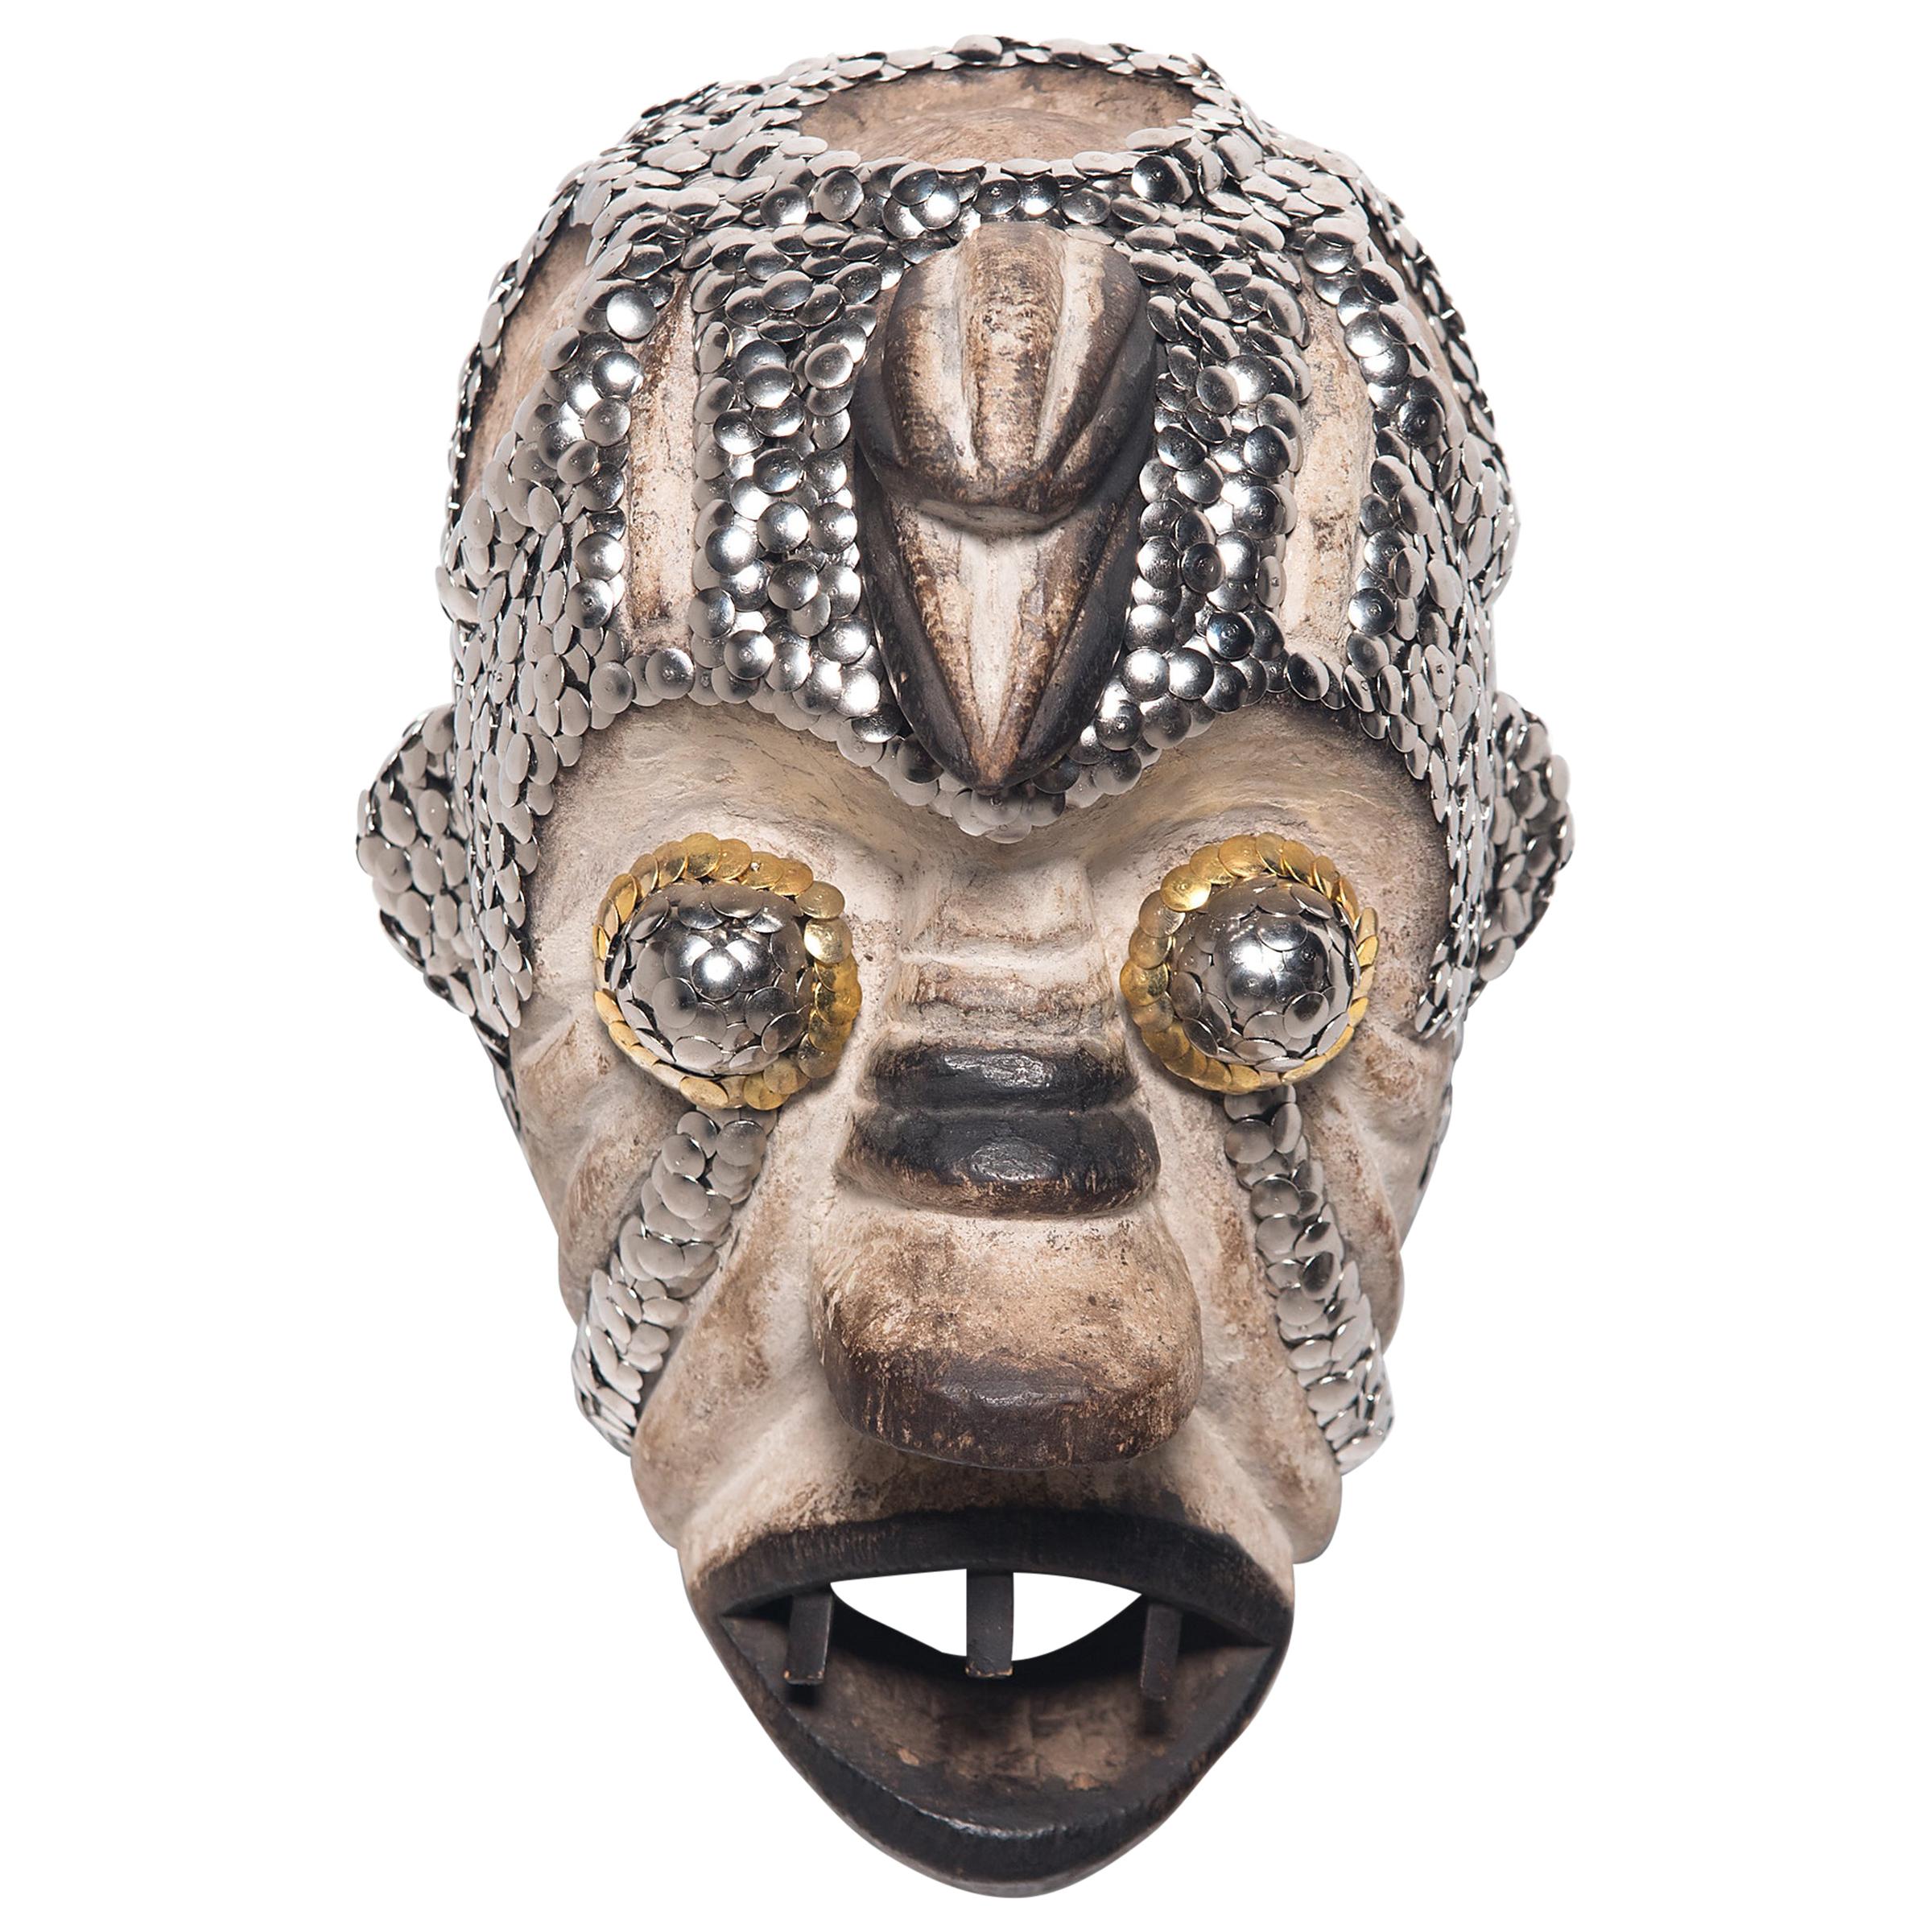 Masque africain clouté par Brian Stanziale